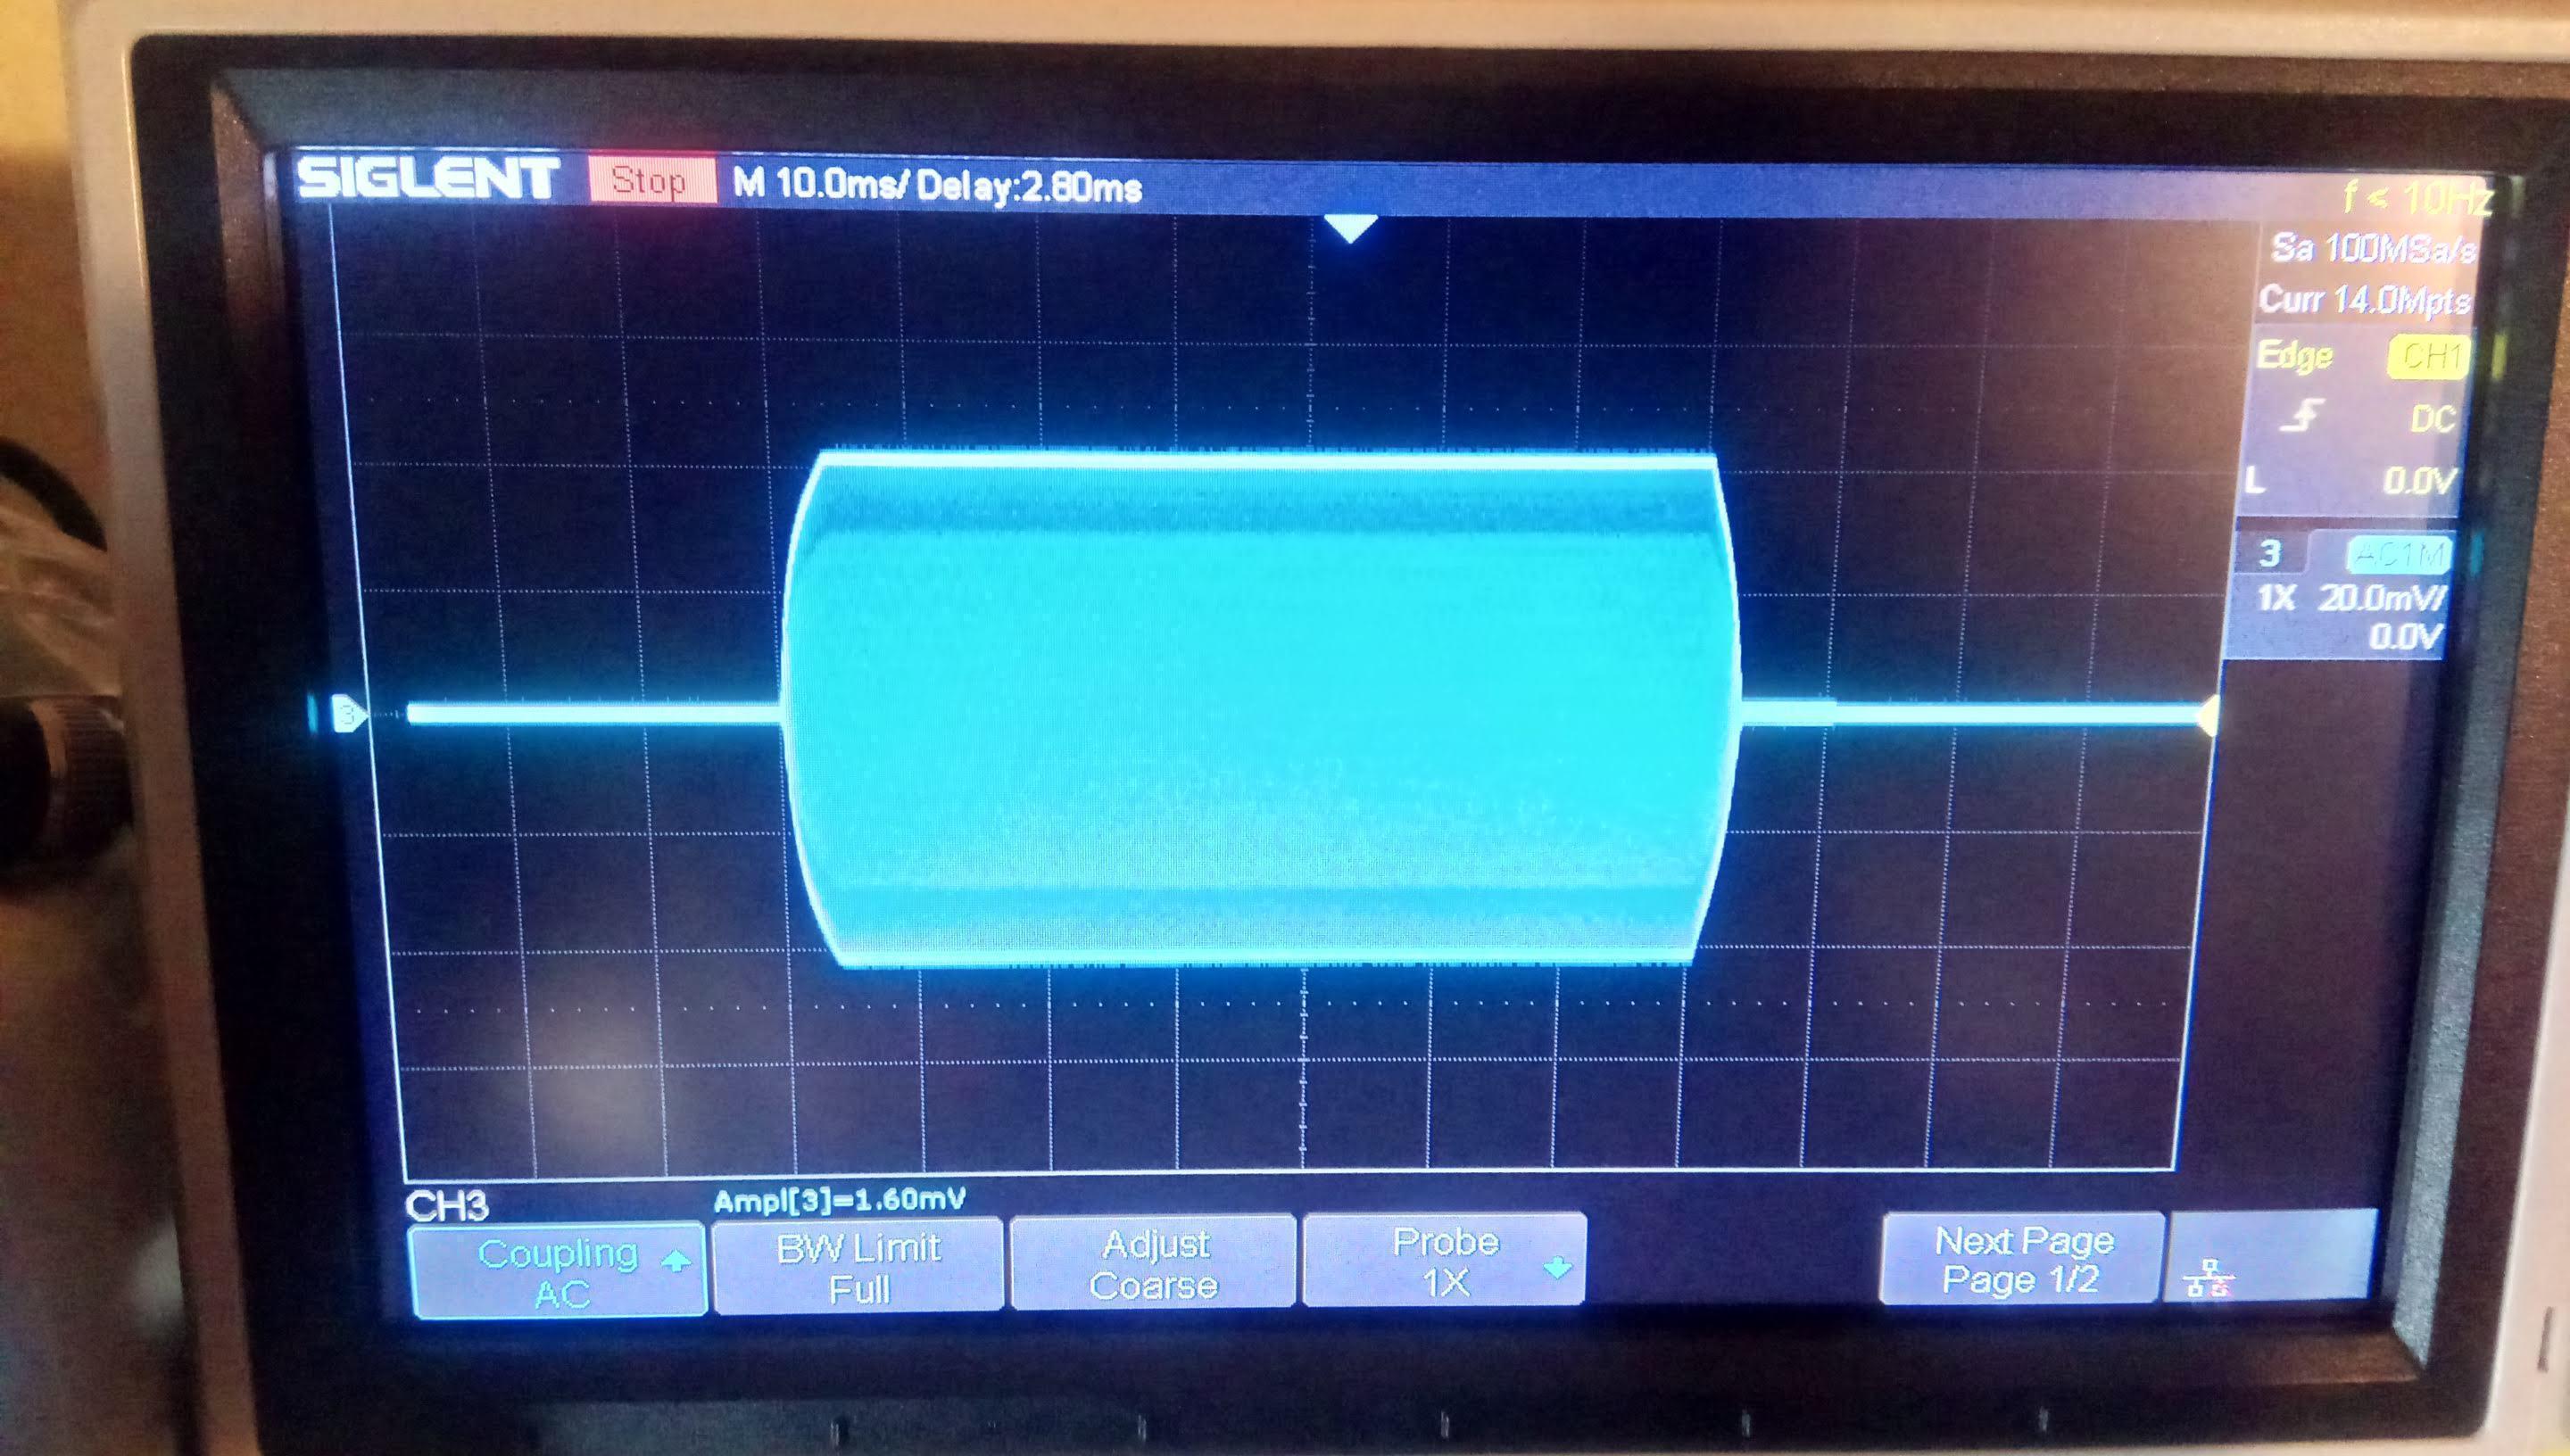 17 WPM dit as seen on an oscilloscope screen